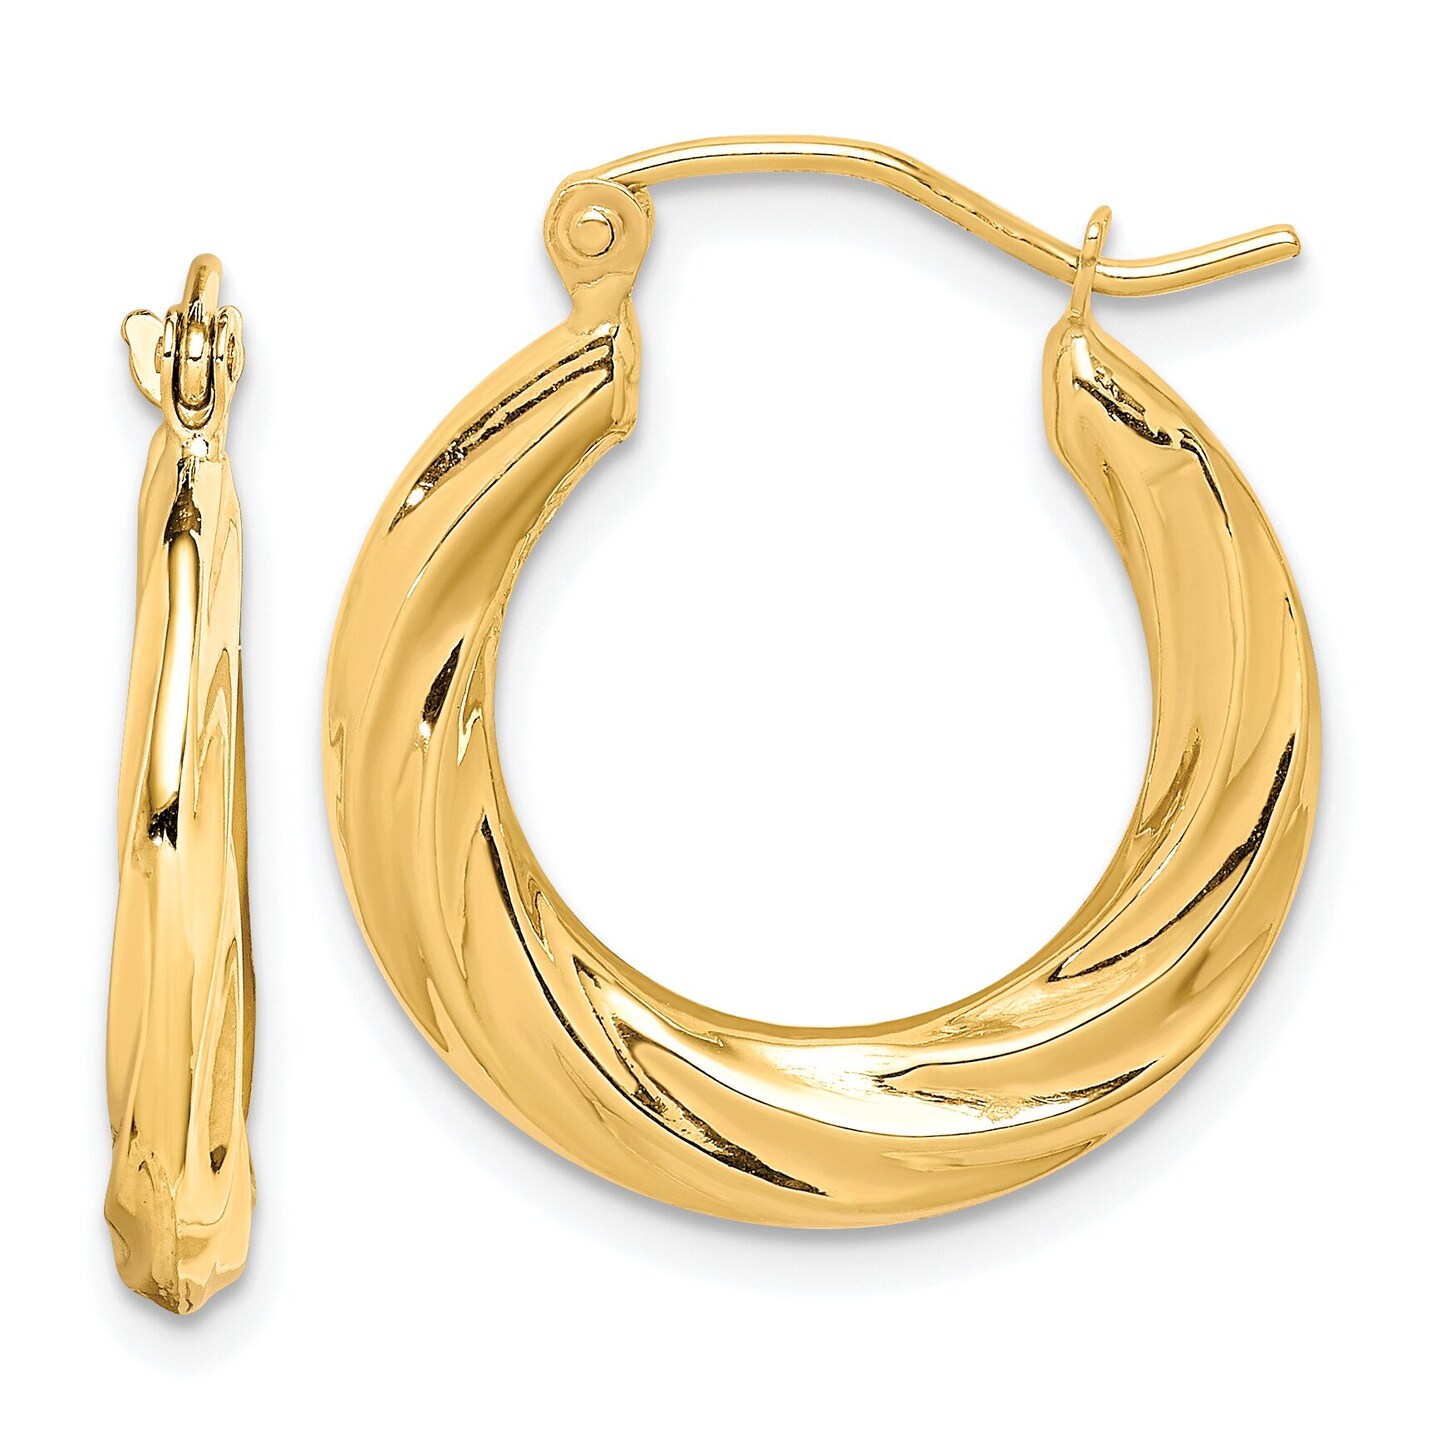 10K Gold Fancy Small Hoop Earrings 14 x 3mm Jewerly